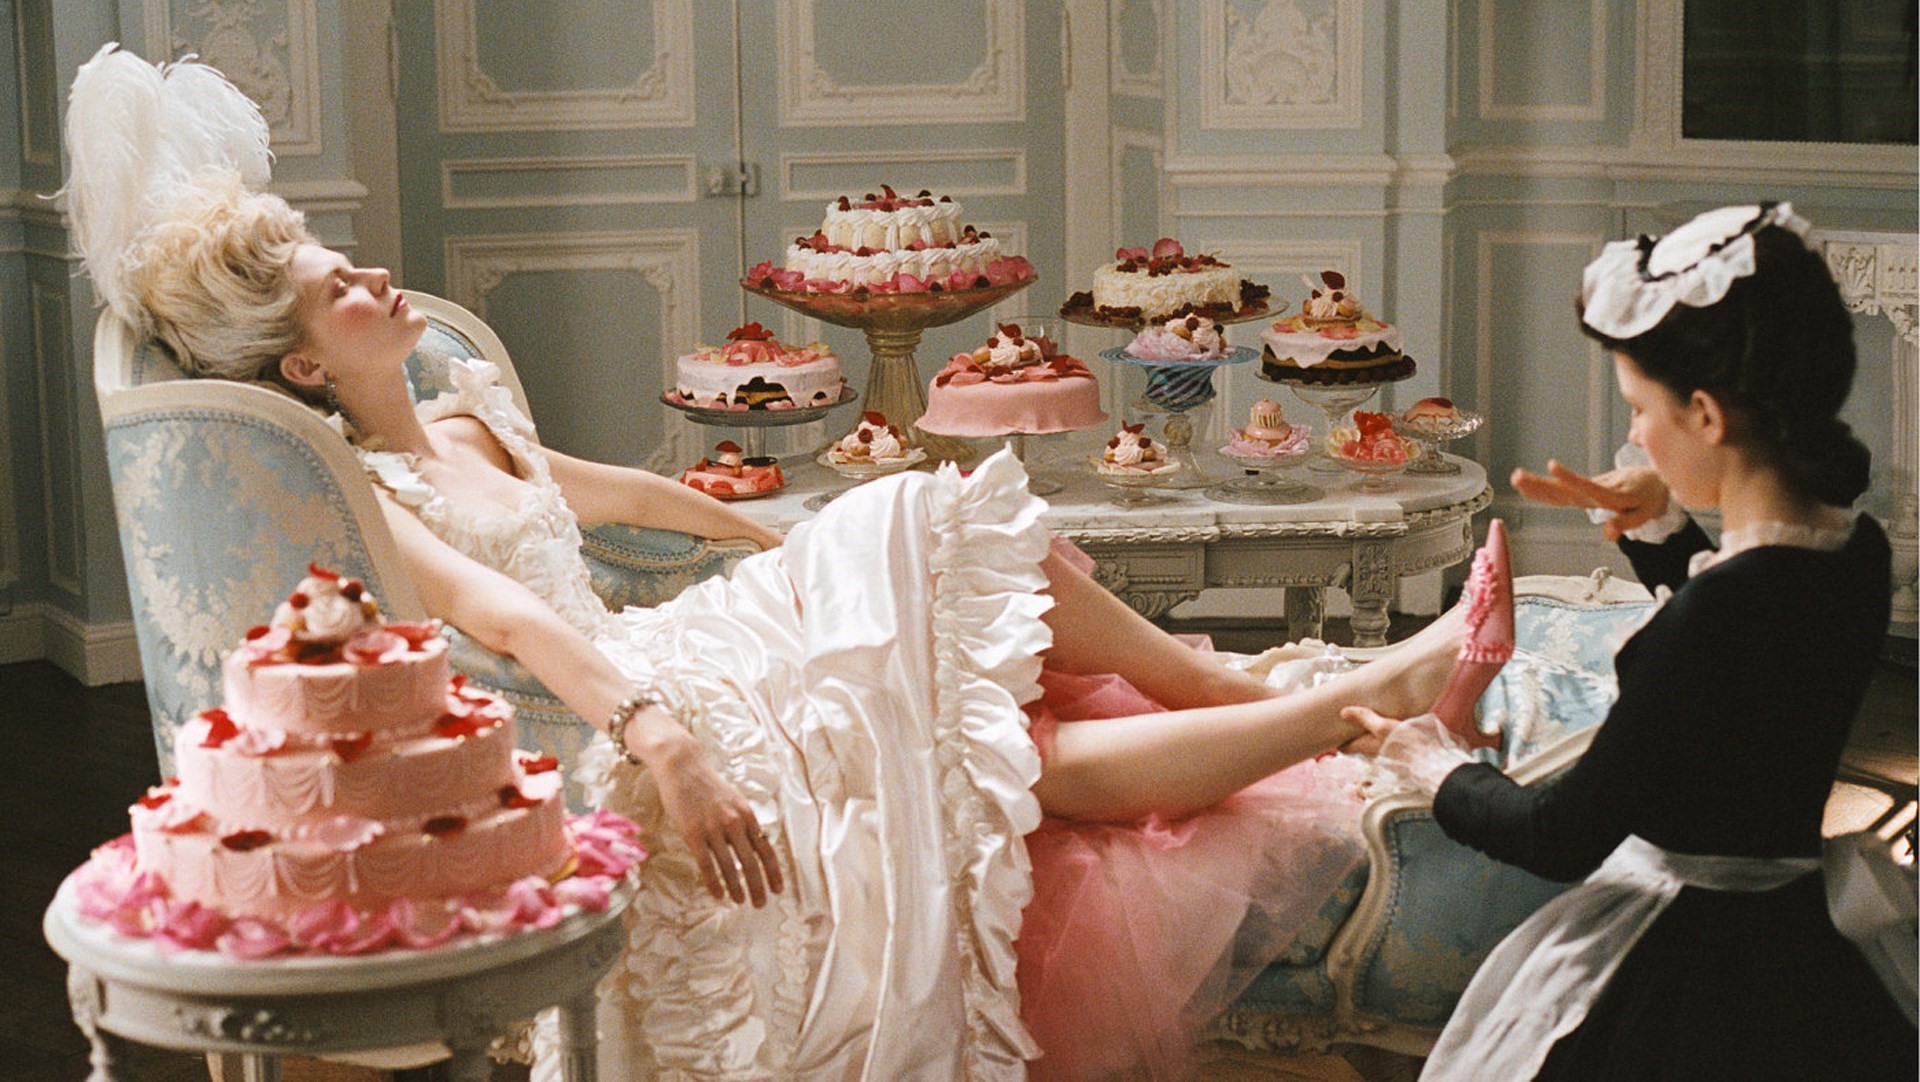 Peter Castro apresenta 'Marie Antoinette' - O Meu Primeiro Filme | IndieJúnior Porto 2023